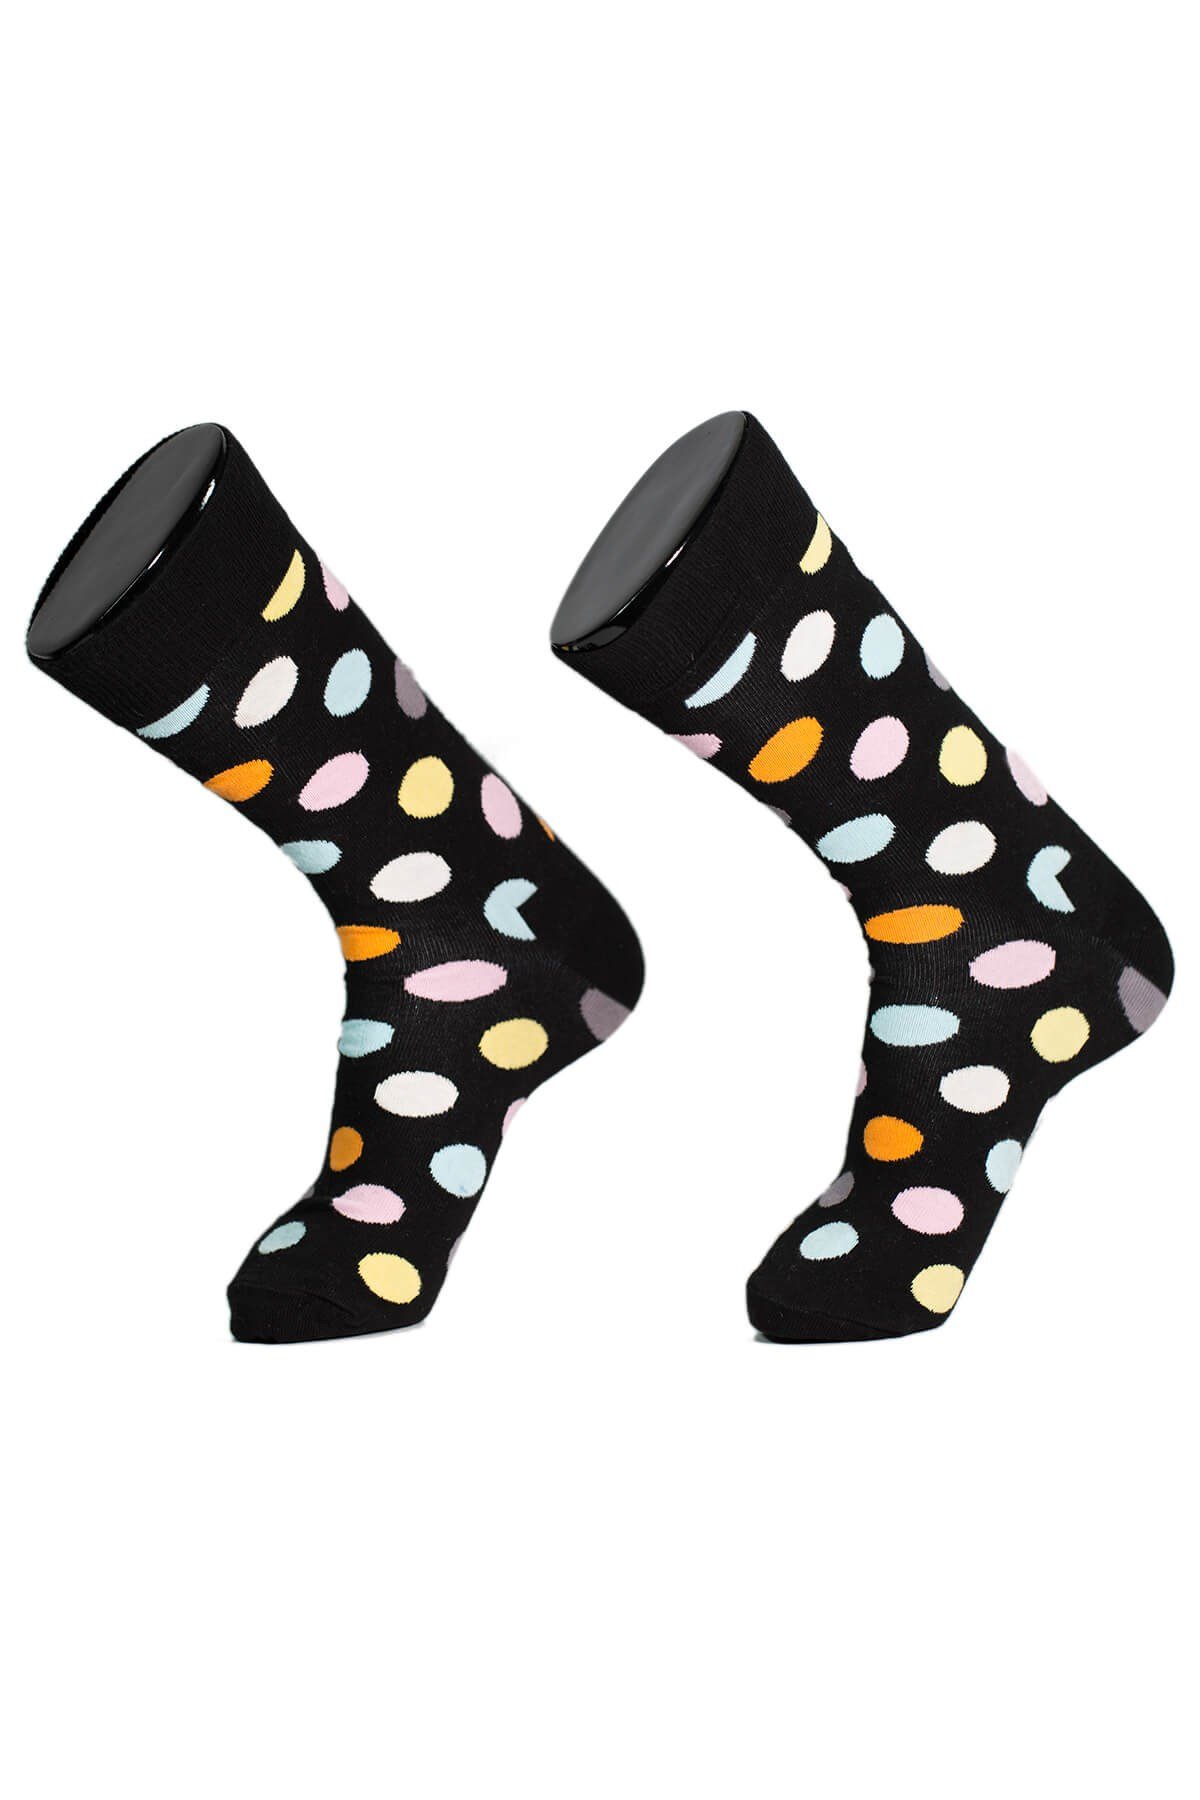 Socksturka Puantiyeli Erkek Soket Çorap